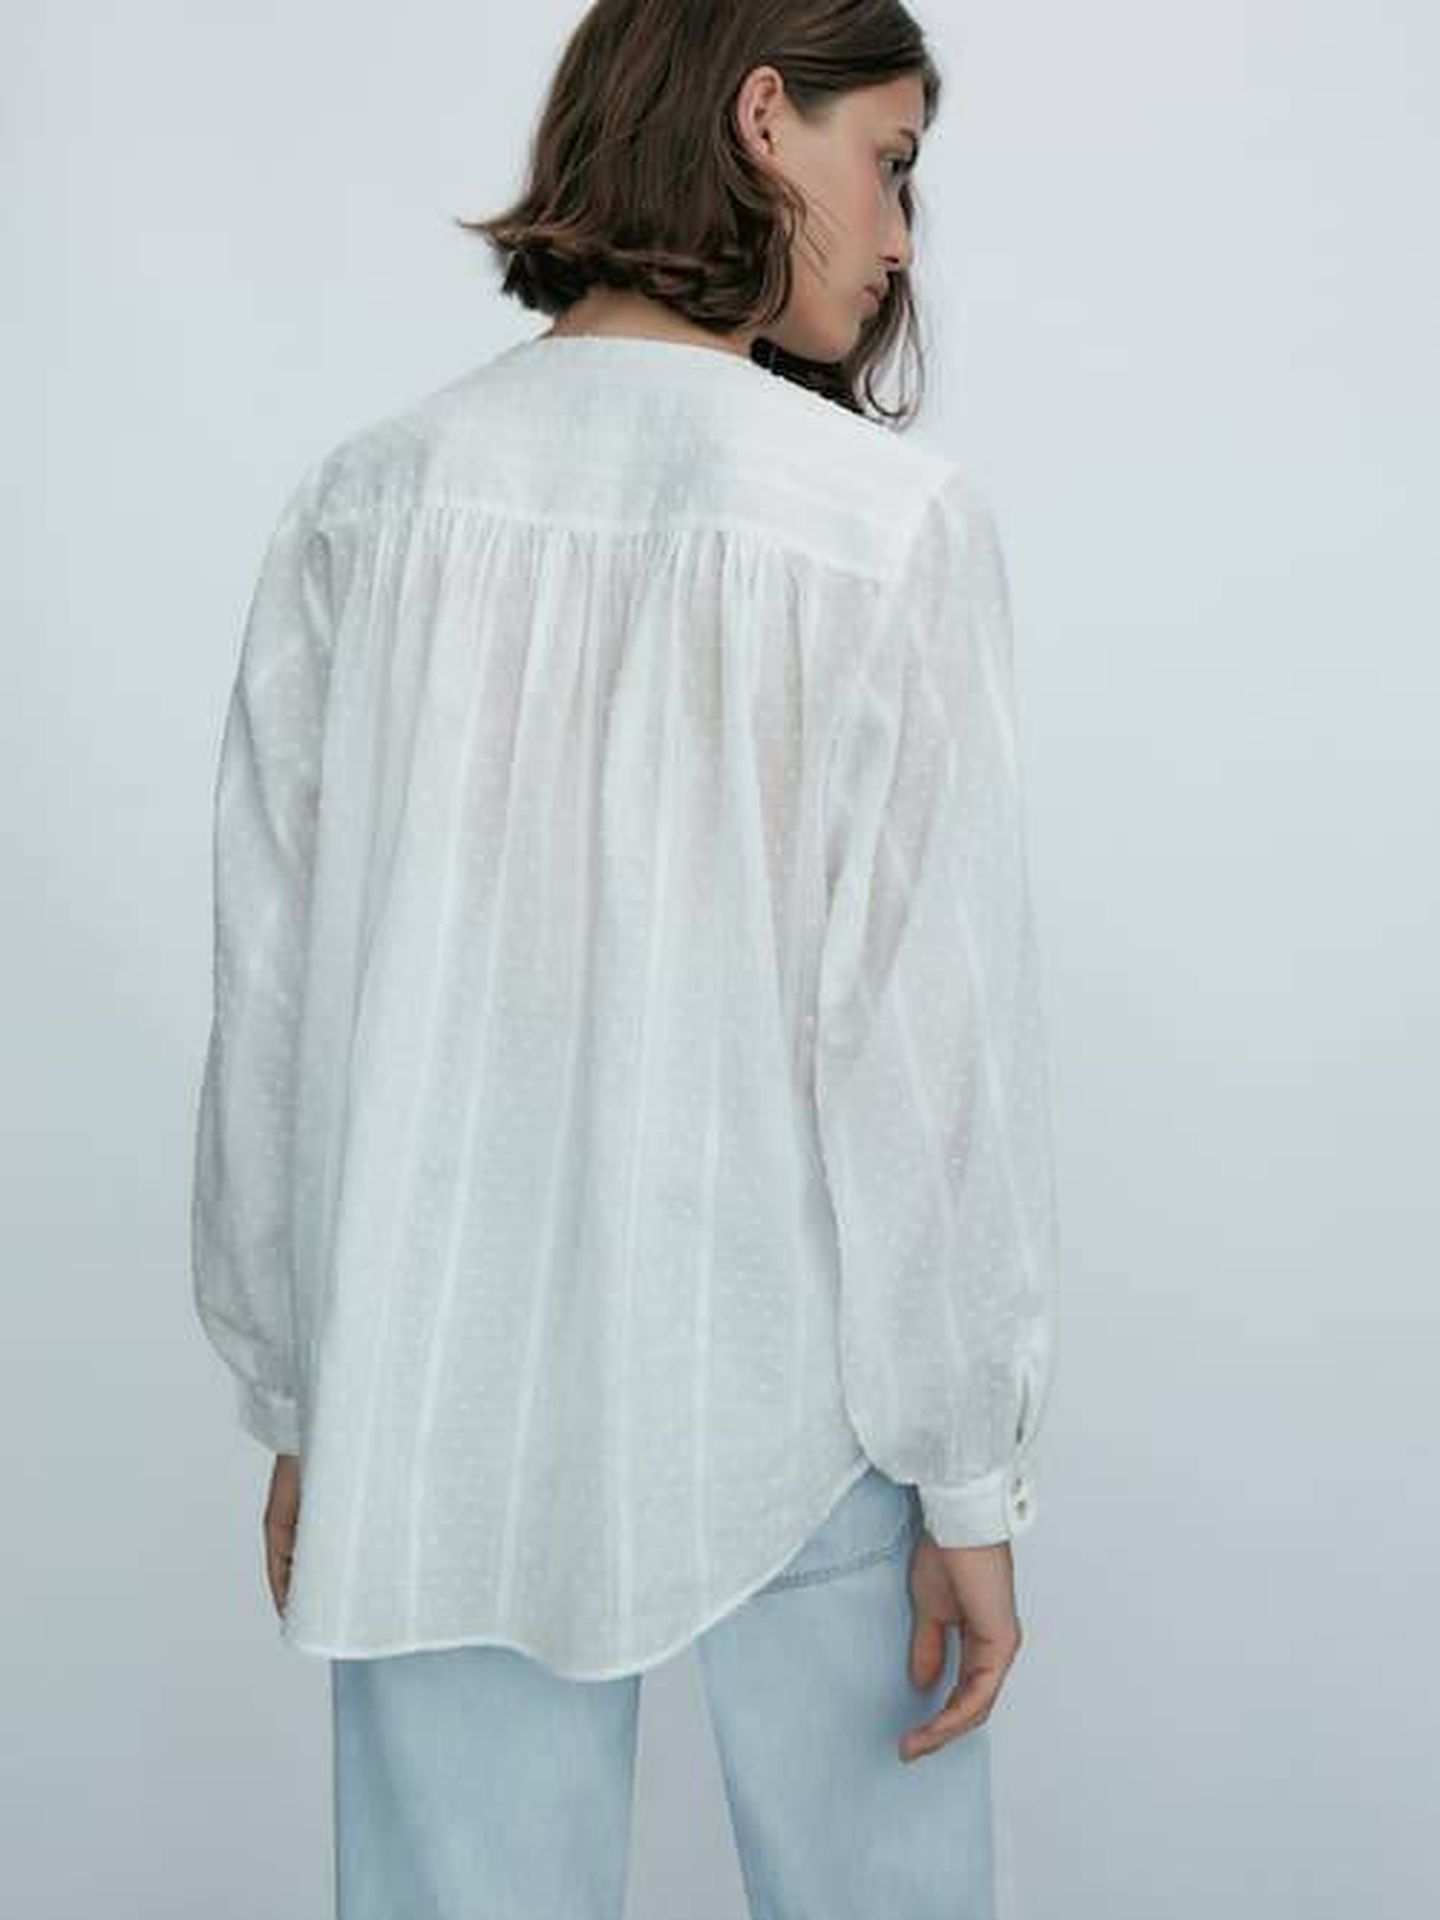 La blusa de plumeti de Massimo Dutti. (Cortesía)